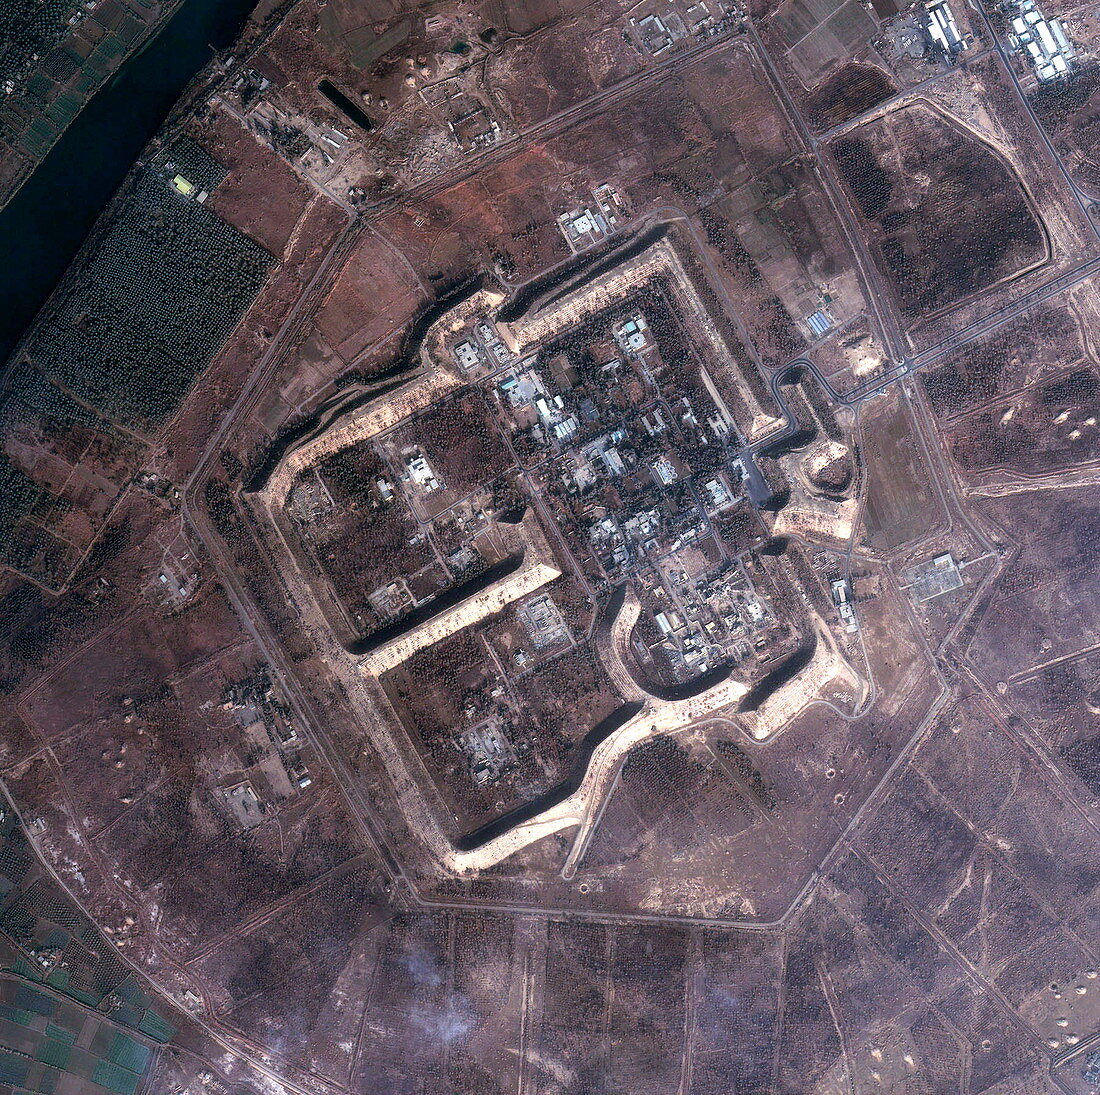 Tuwaitha Nuclear Plant,Iraq